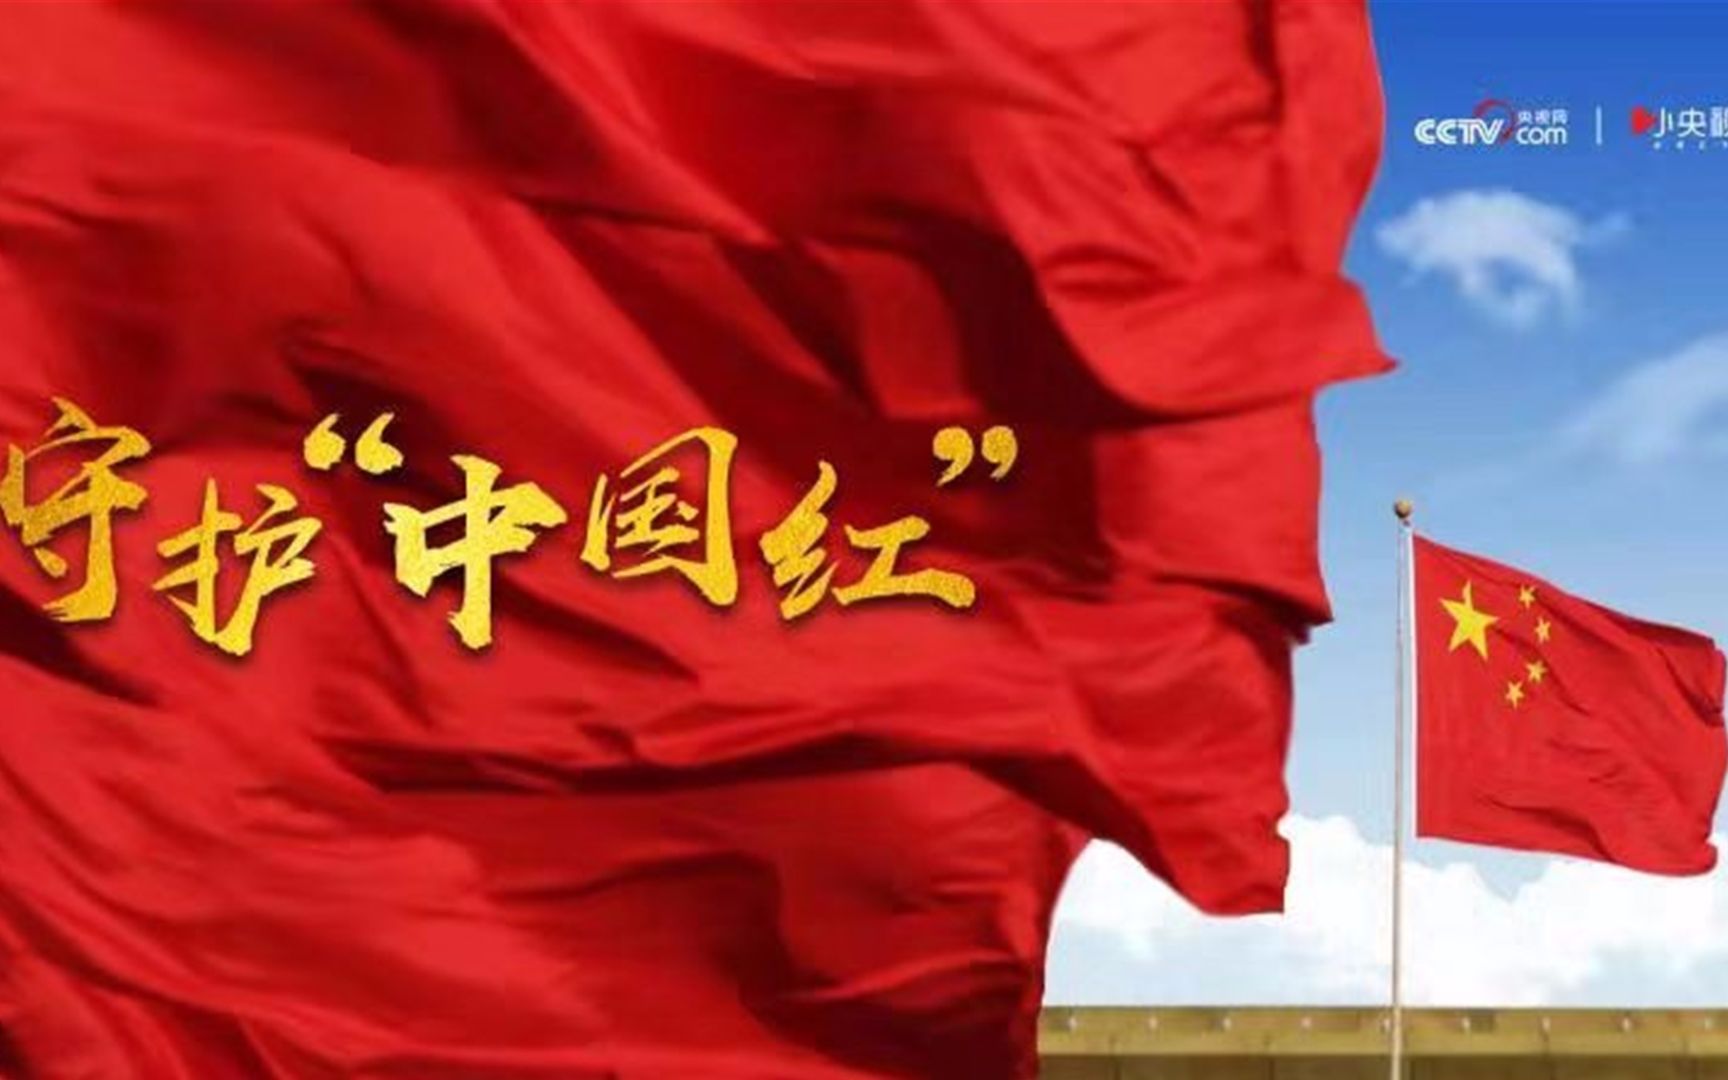 微视频丨不负先辈 不辱华夏 共同守护“中国红”